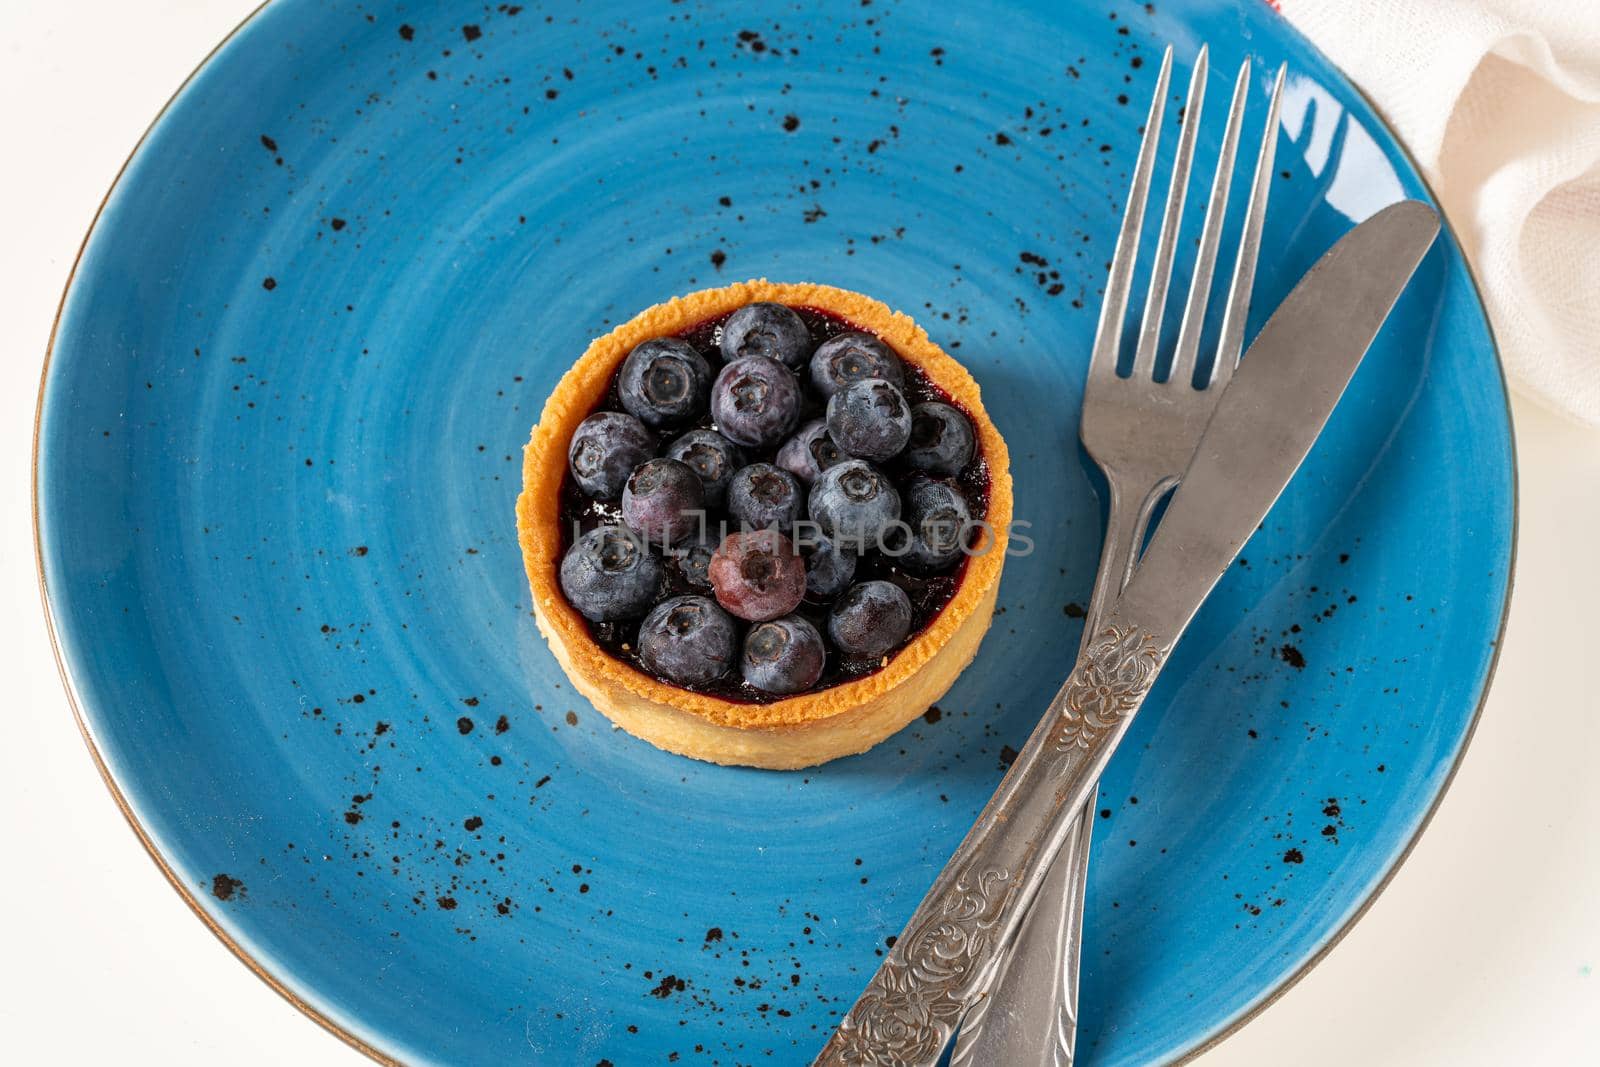 Freshly baked blueberry tart on a blue porcelain plate